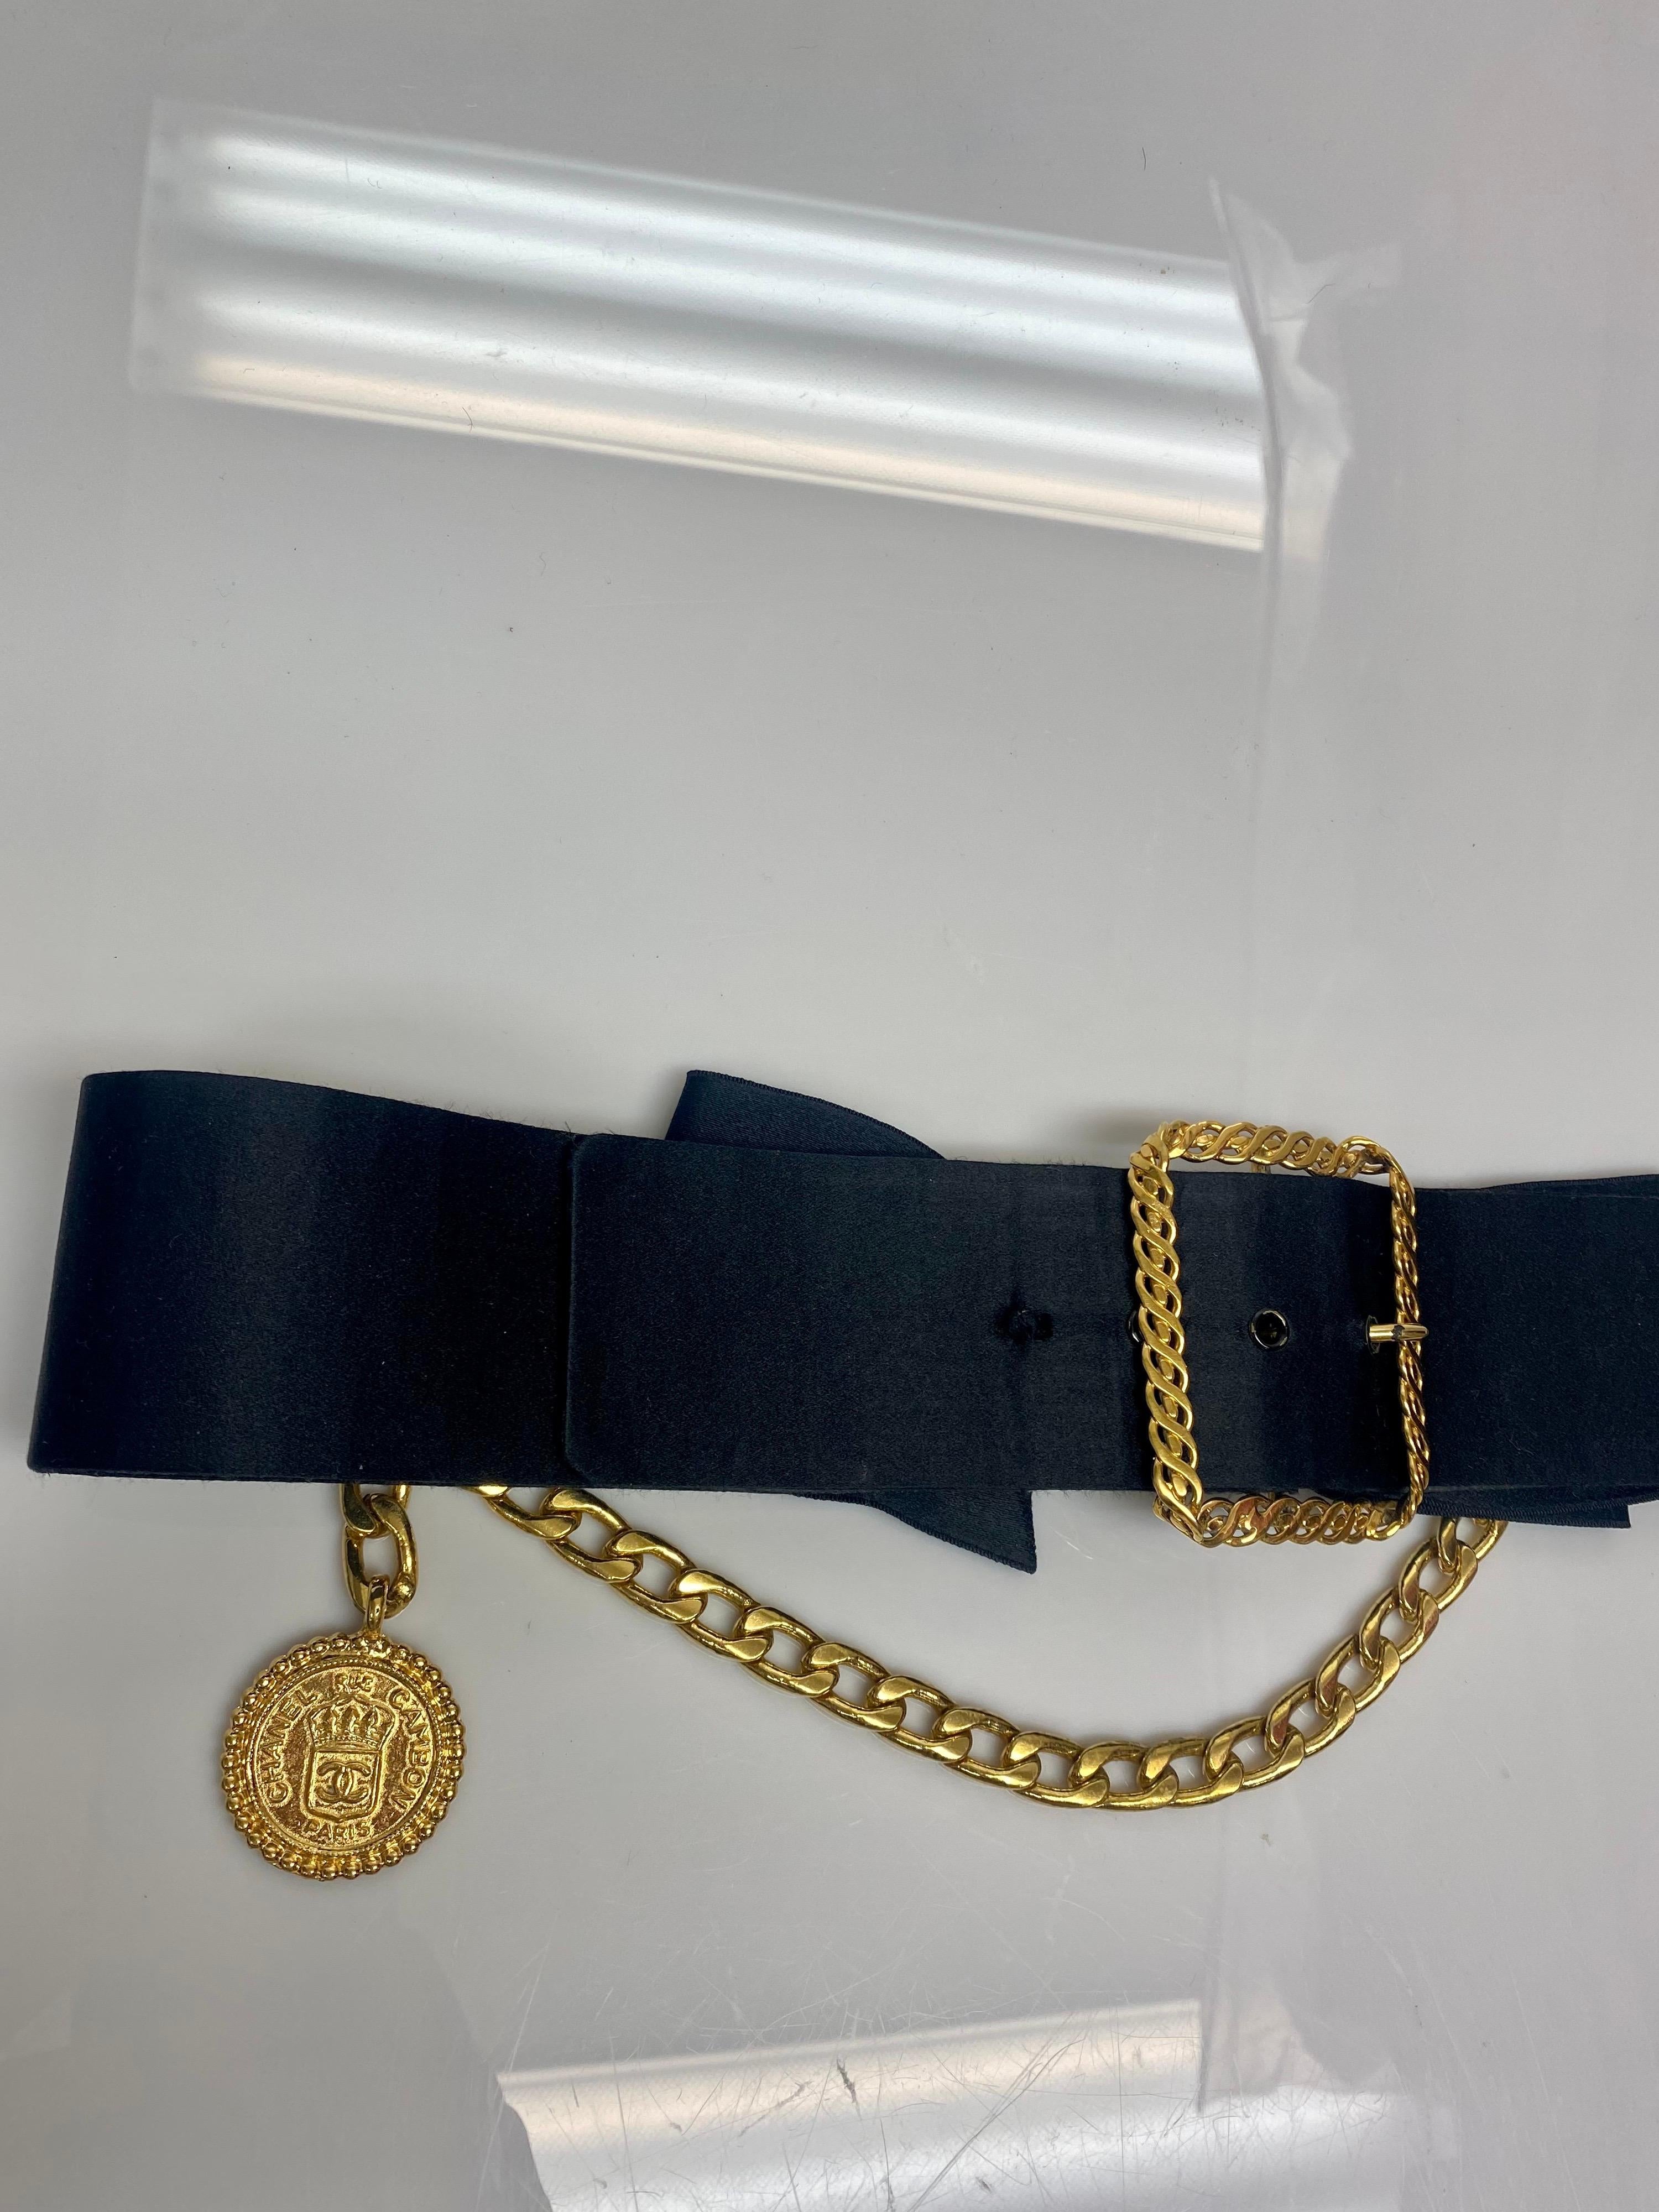 Ceinture Vintage By By en satin noir avec boucle dorée, chaîne et médaillon. Cette ceinture vintage de Chanel est un ajout luxueux à toute garde-robe. L'article comporte un nœud en satin noir et une grande boucle en métal doré avec une chaîne et un